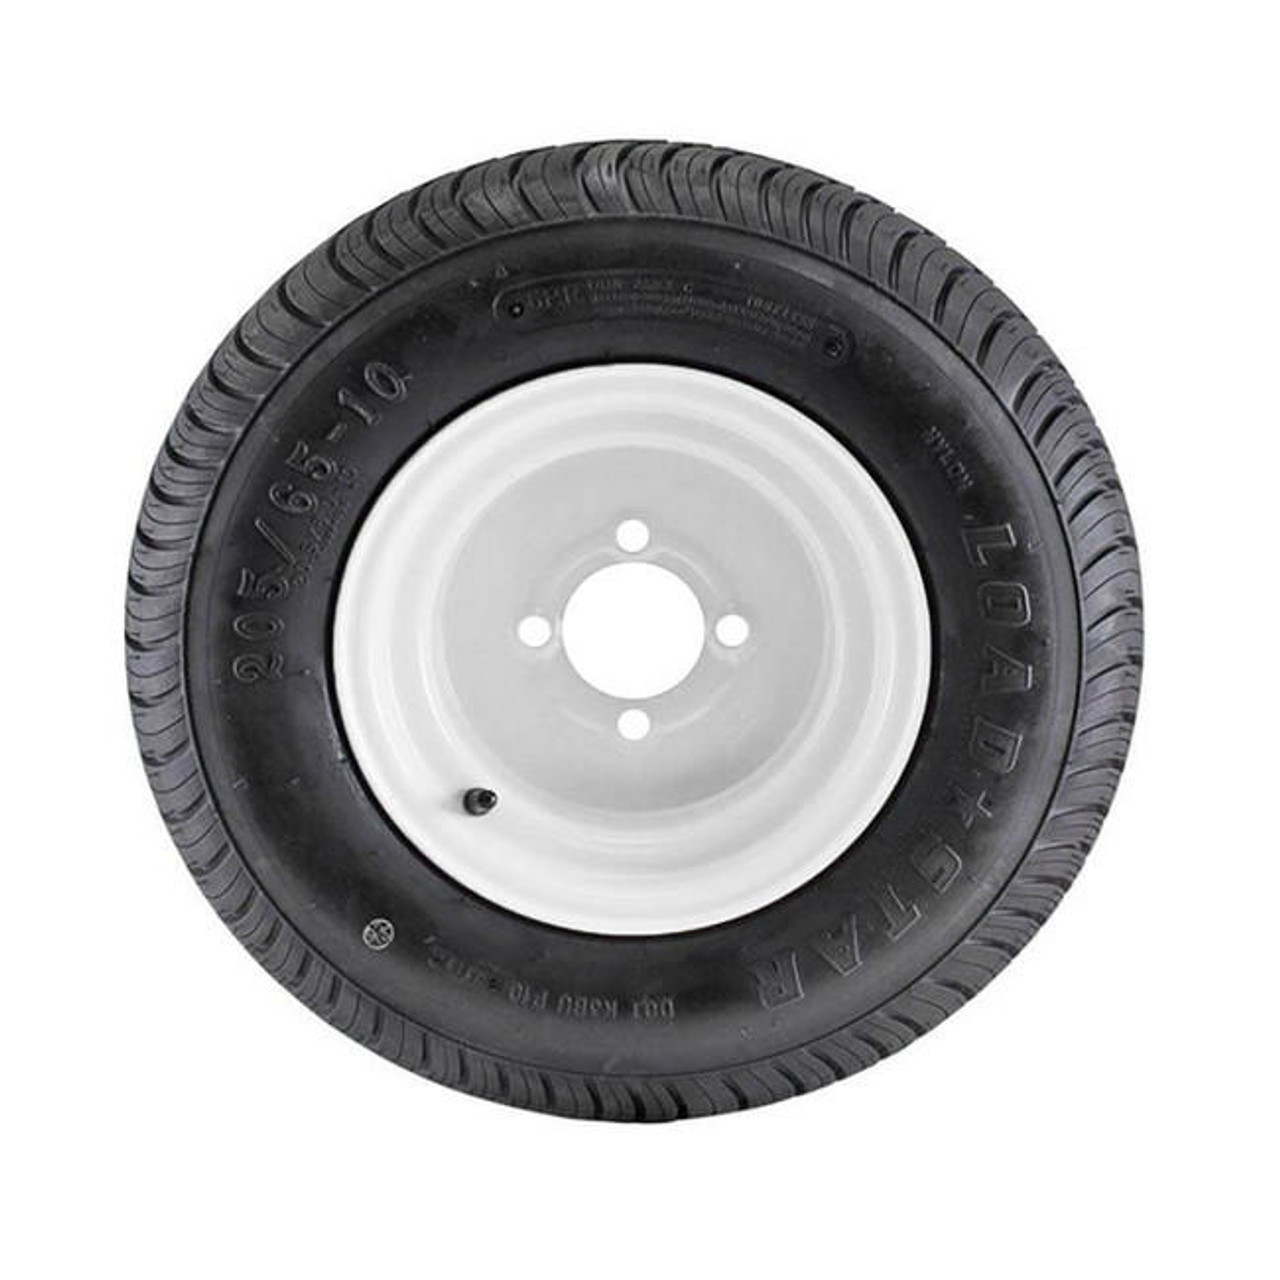 Pack 20.5X8.00-10 Loadstar Trailer Tire LRC on Bolt White Wheel